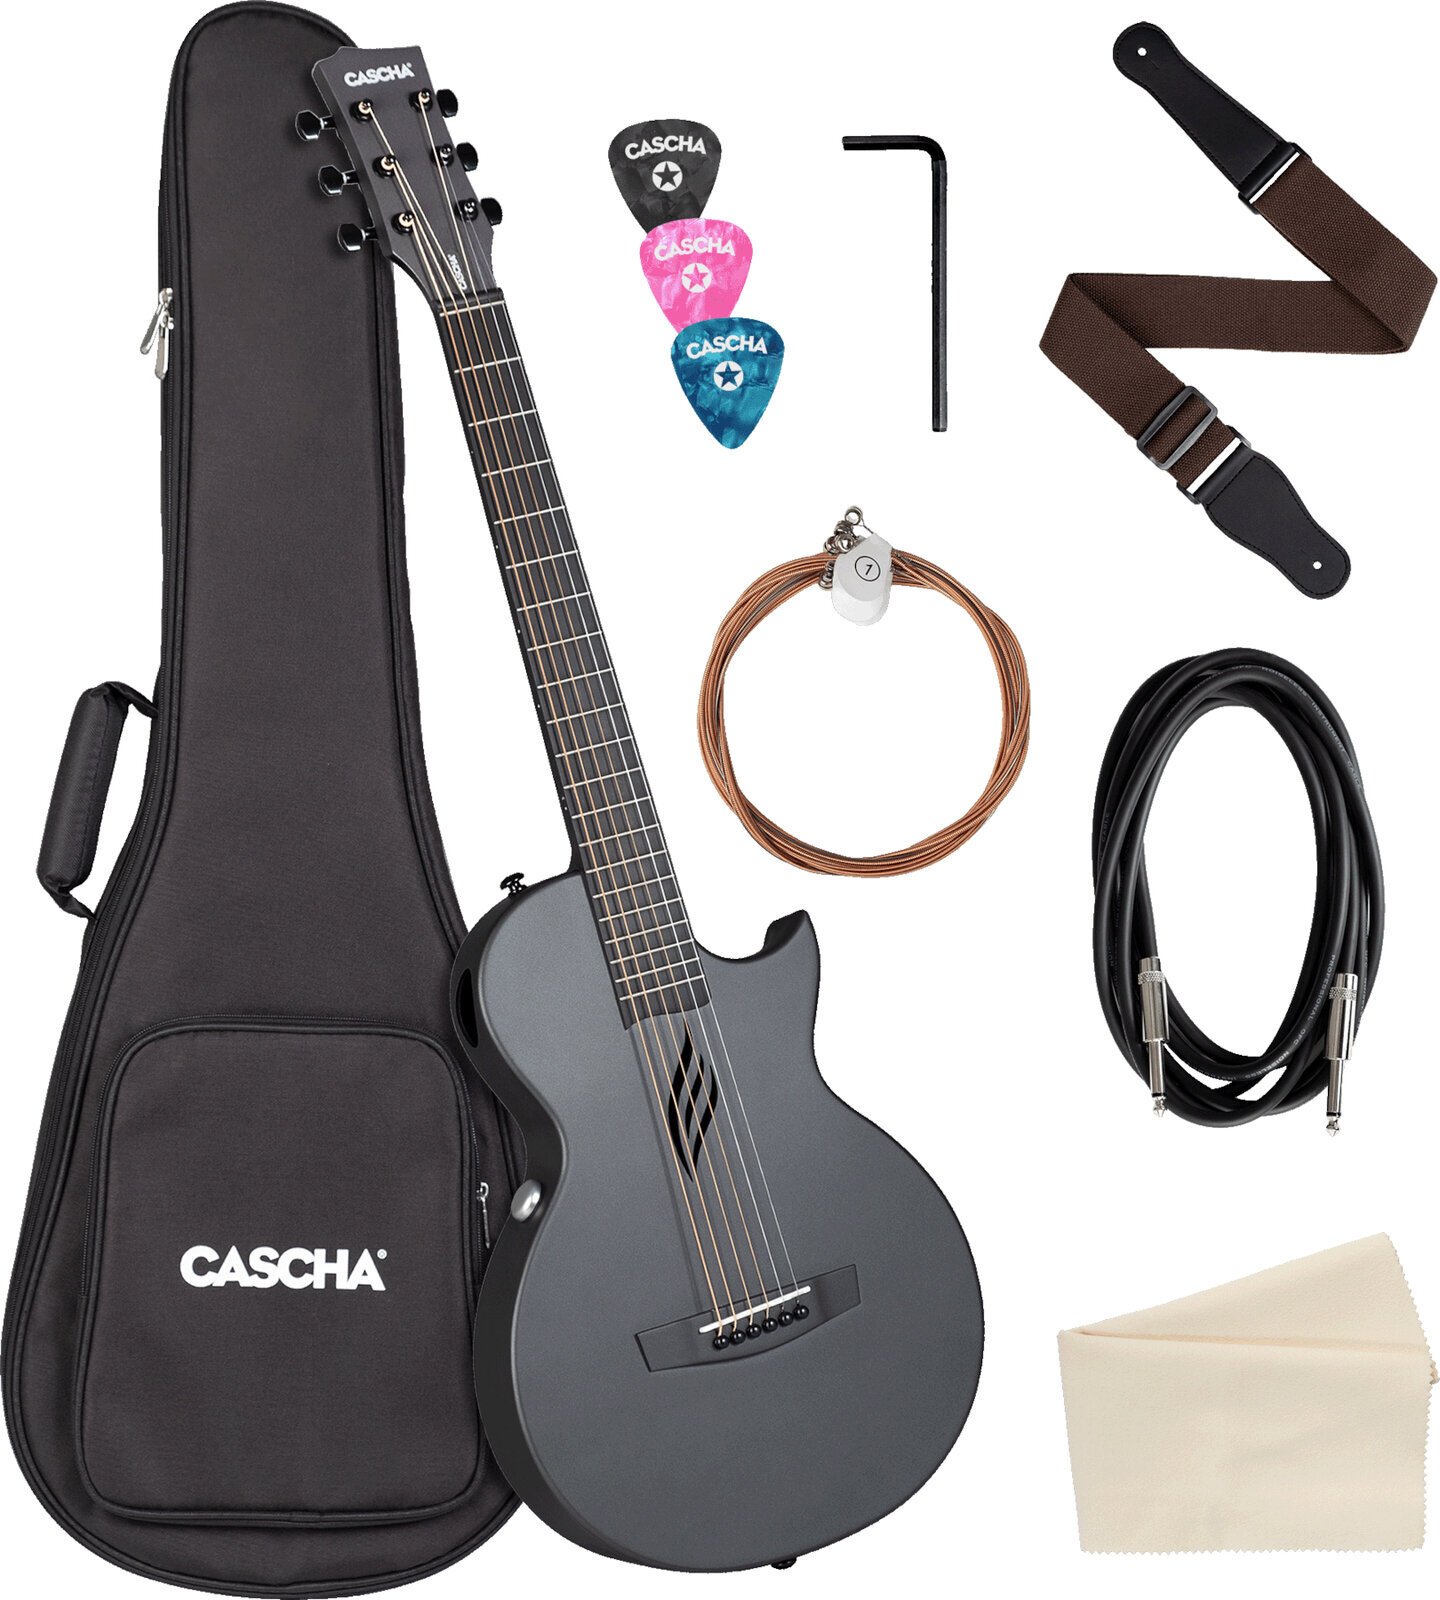 Speciell akustisk-elektrisk gitarr Cascha Carbon Fibre Electric Acoustic Guitar Black Matte